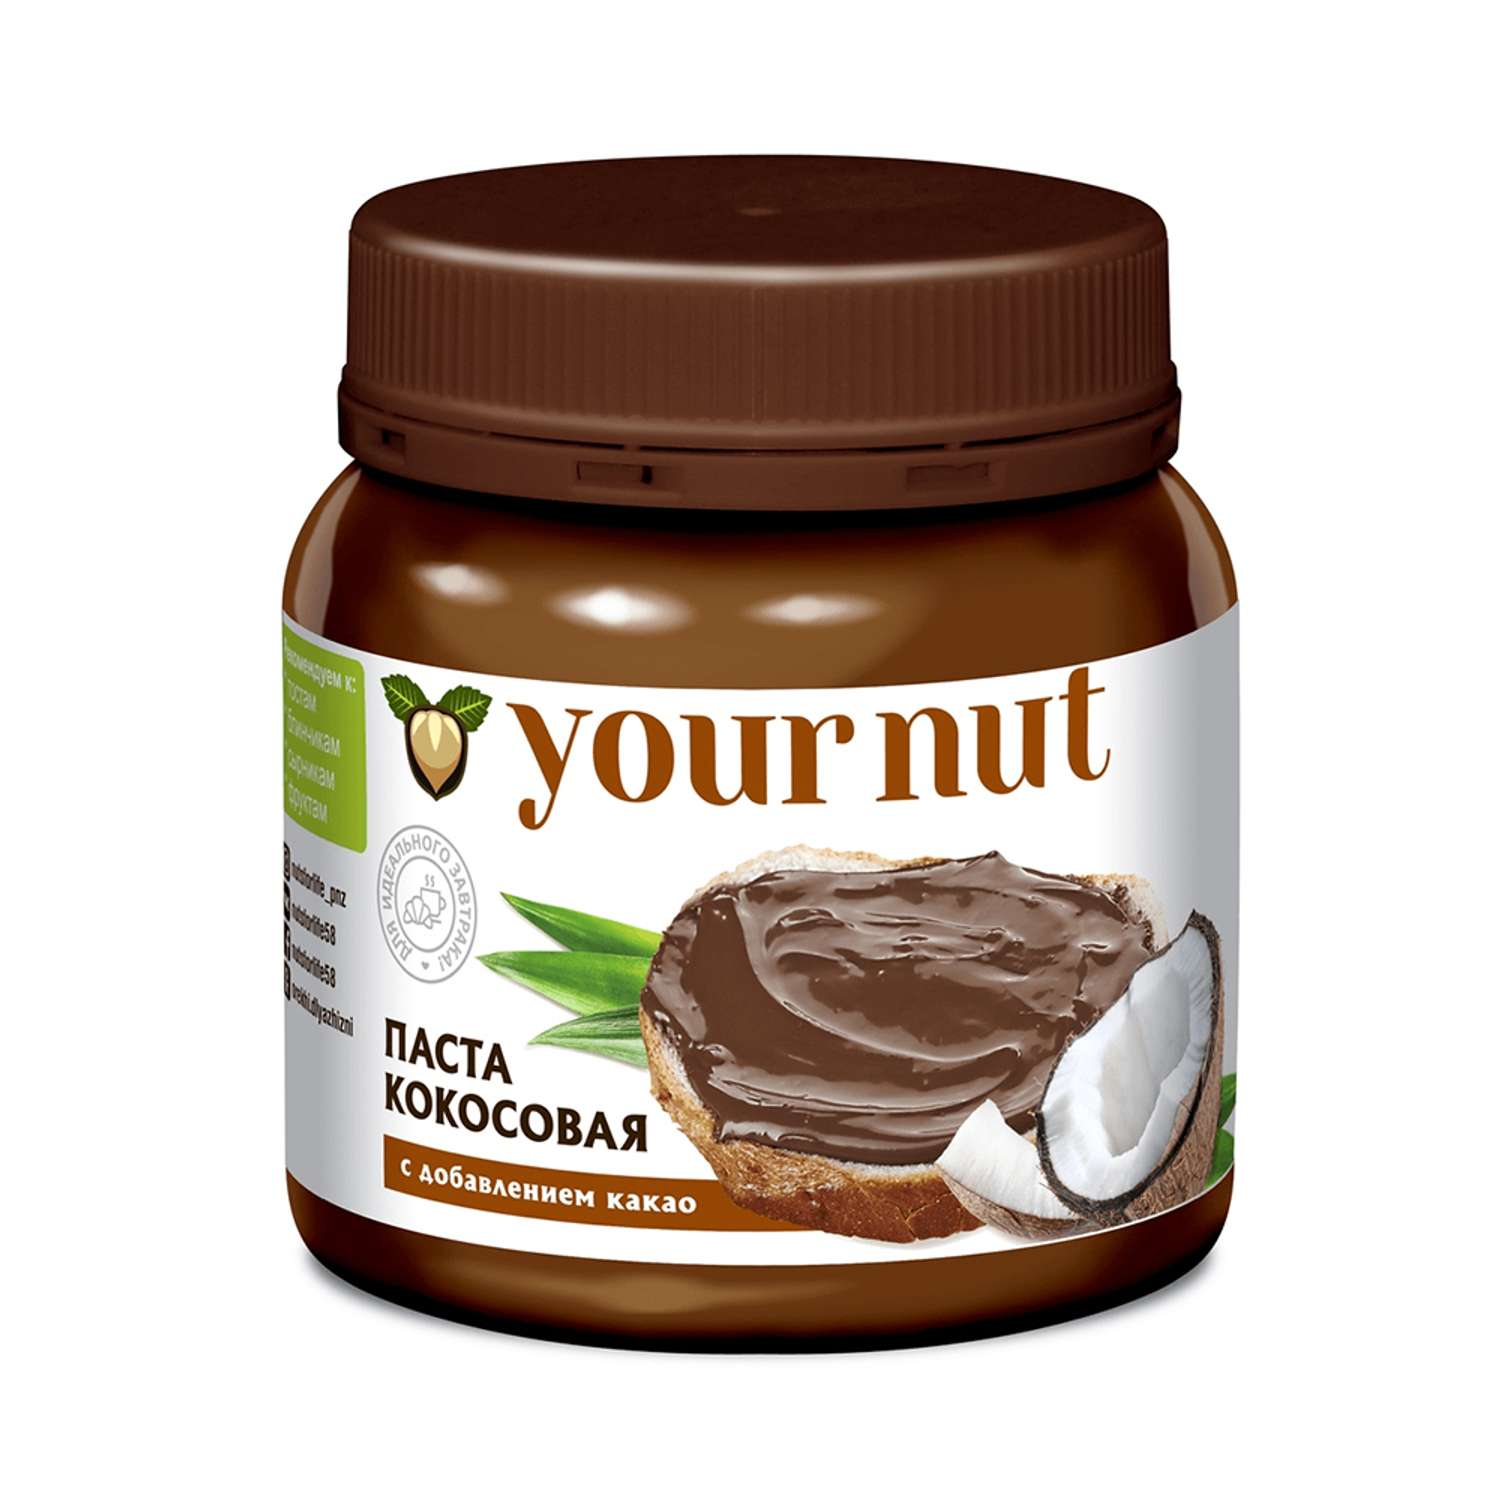 Паста кокосовая your nut с какао 250 г - фото 1